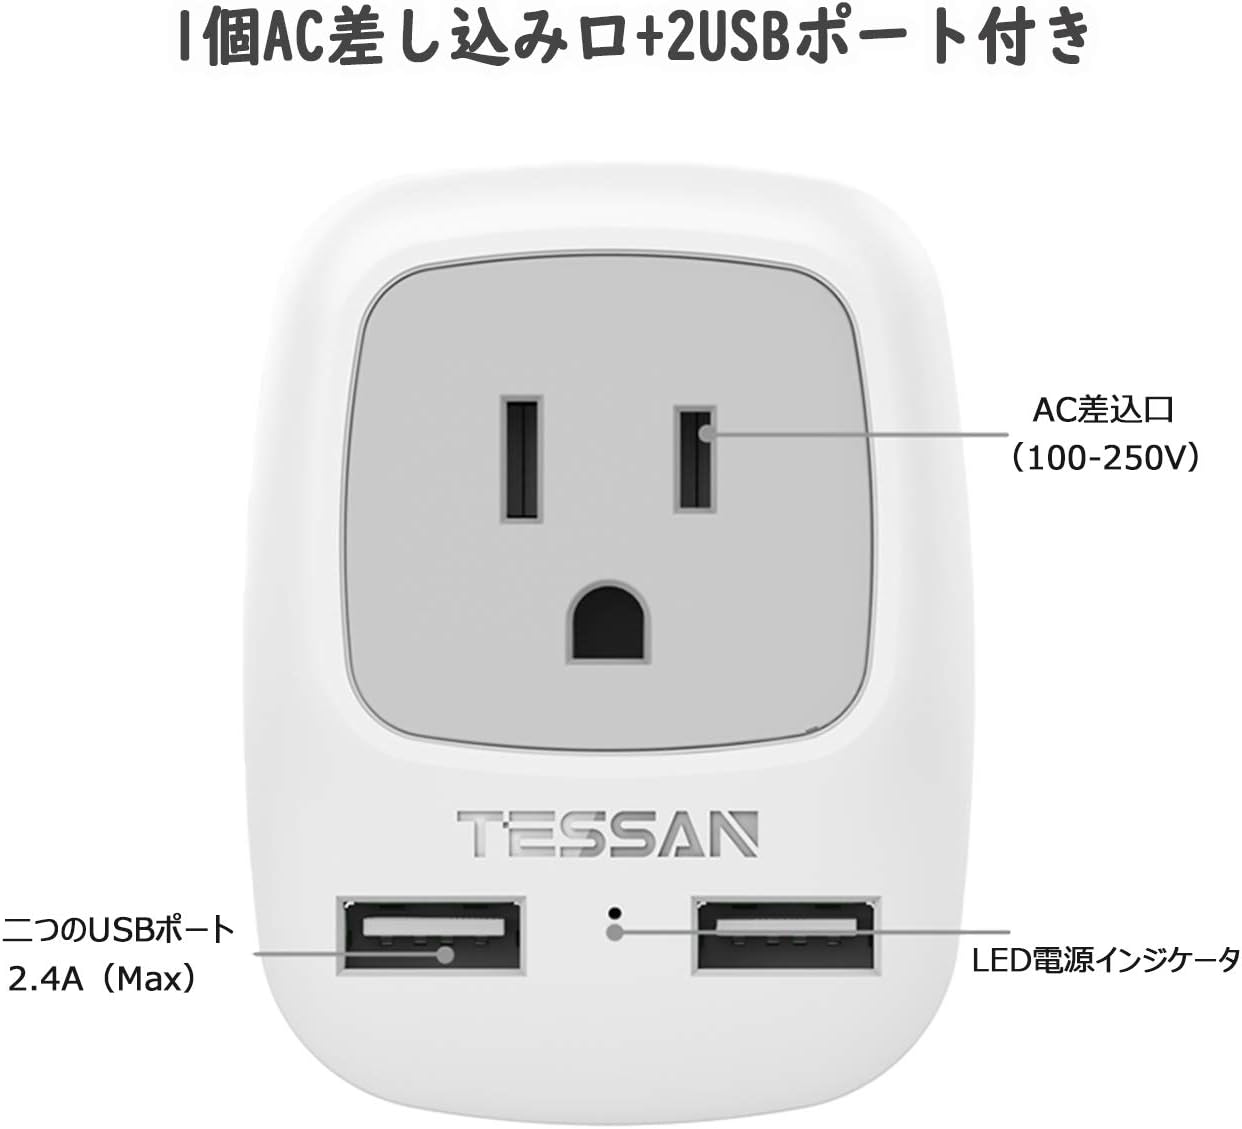 TESSAN 変換プラグ Oタイプ 2USBポート付き